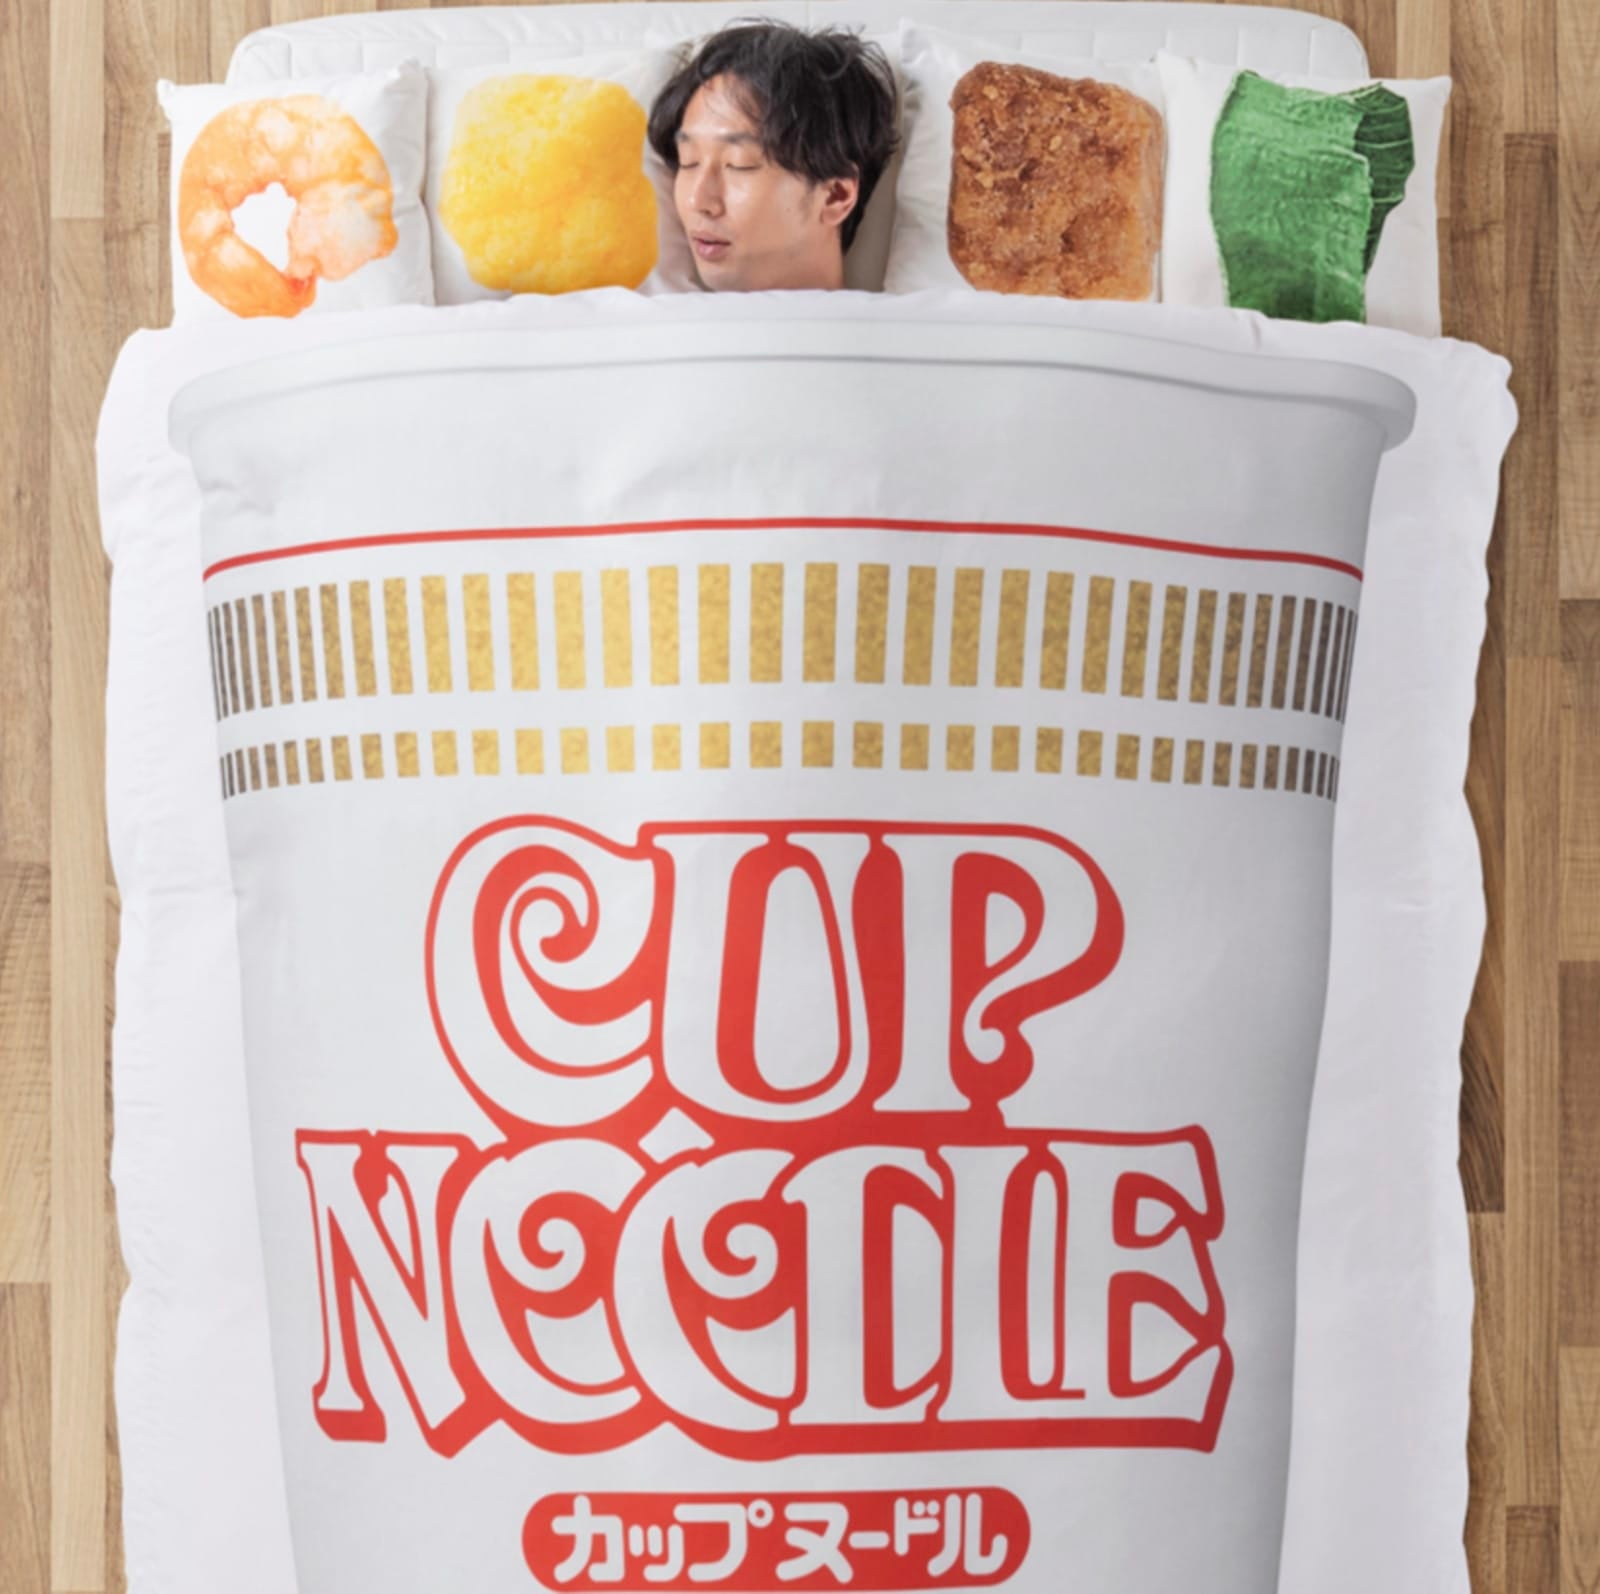 ไอเดียของใช้ cup noodles nissin ญี่ปุ่น